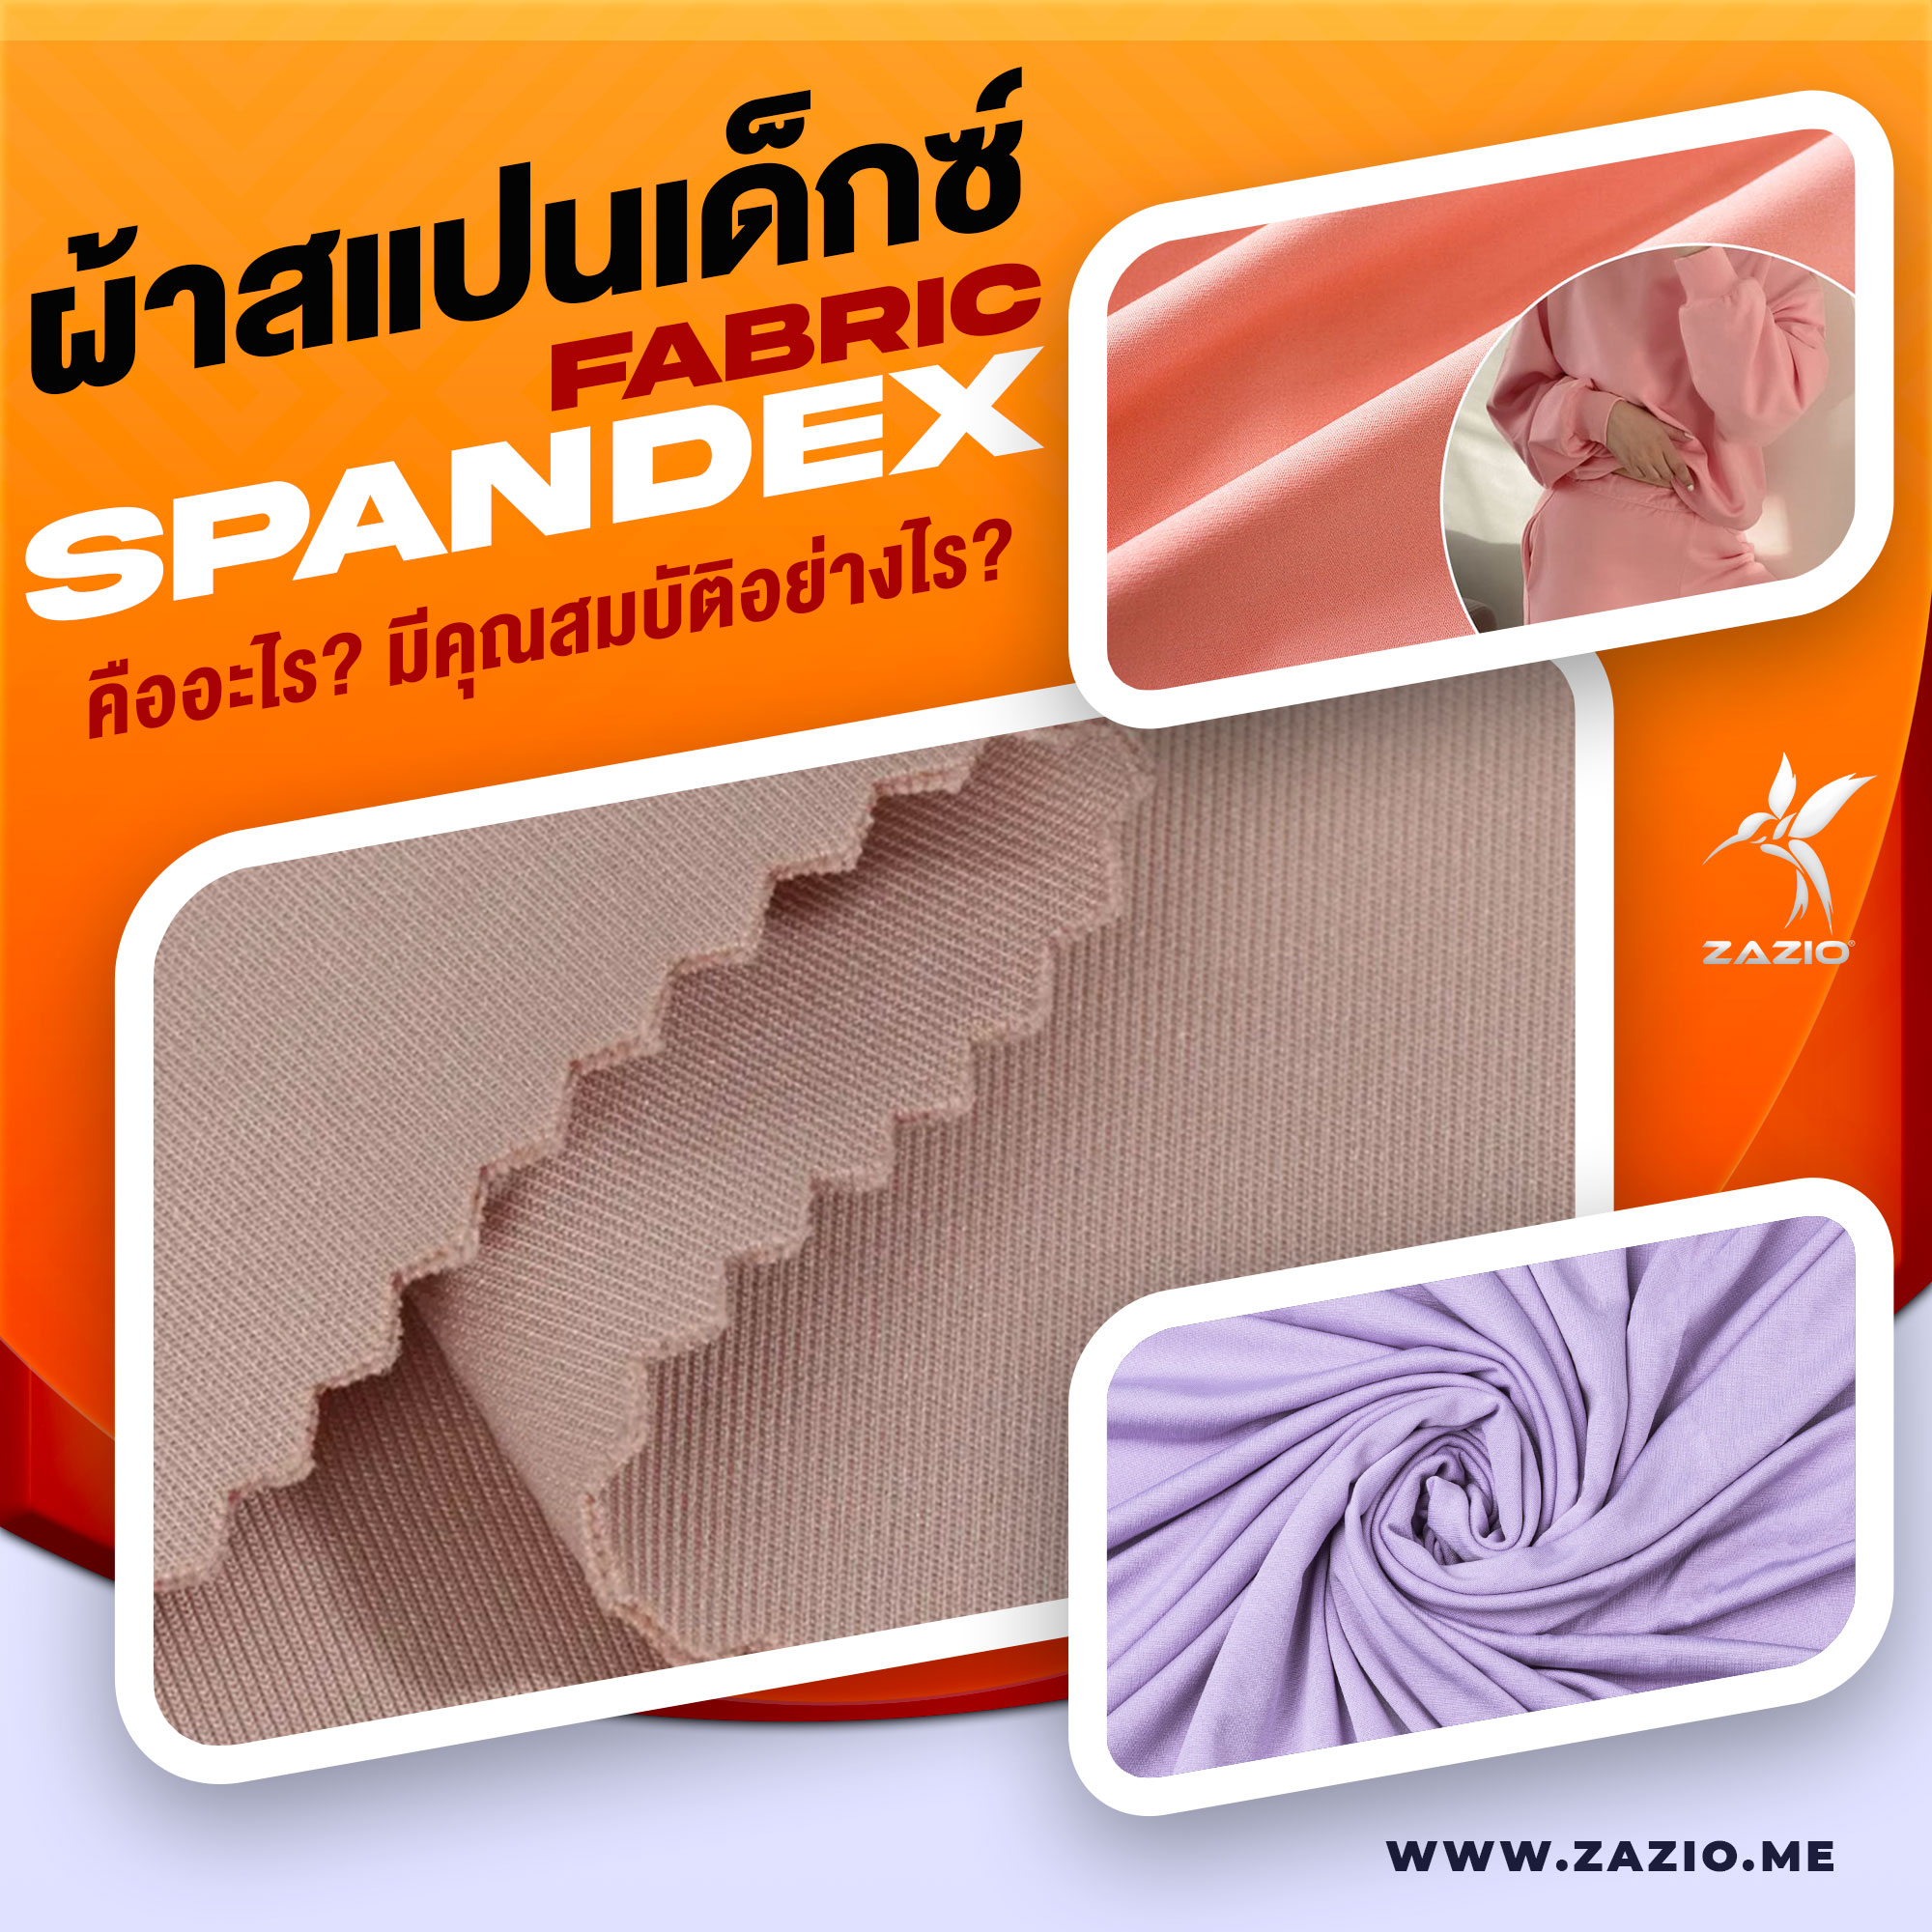 ผ้าสแปนเด็กซ์ (Spandex Fabric) คืออะไร ข้อดีข้อเสียอย่างไร?